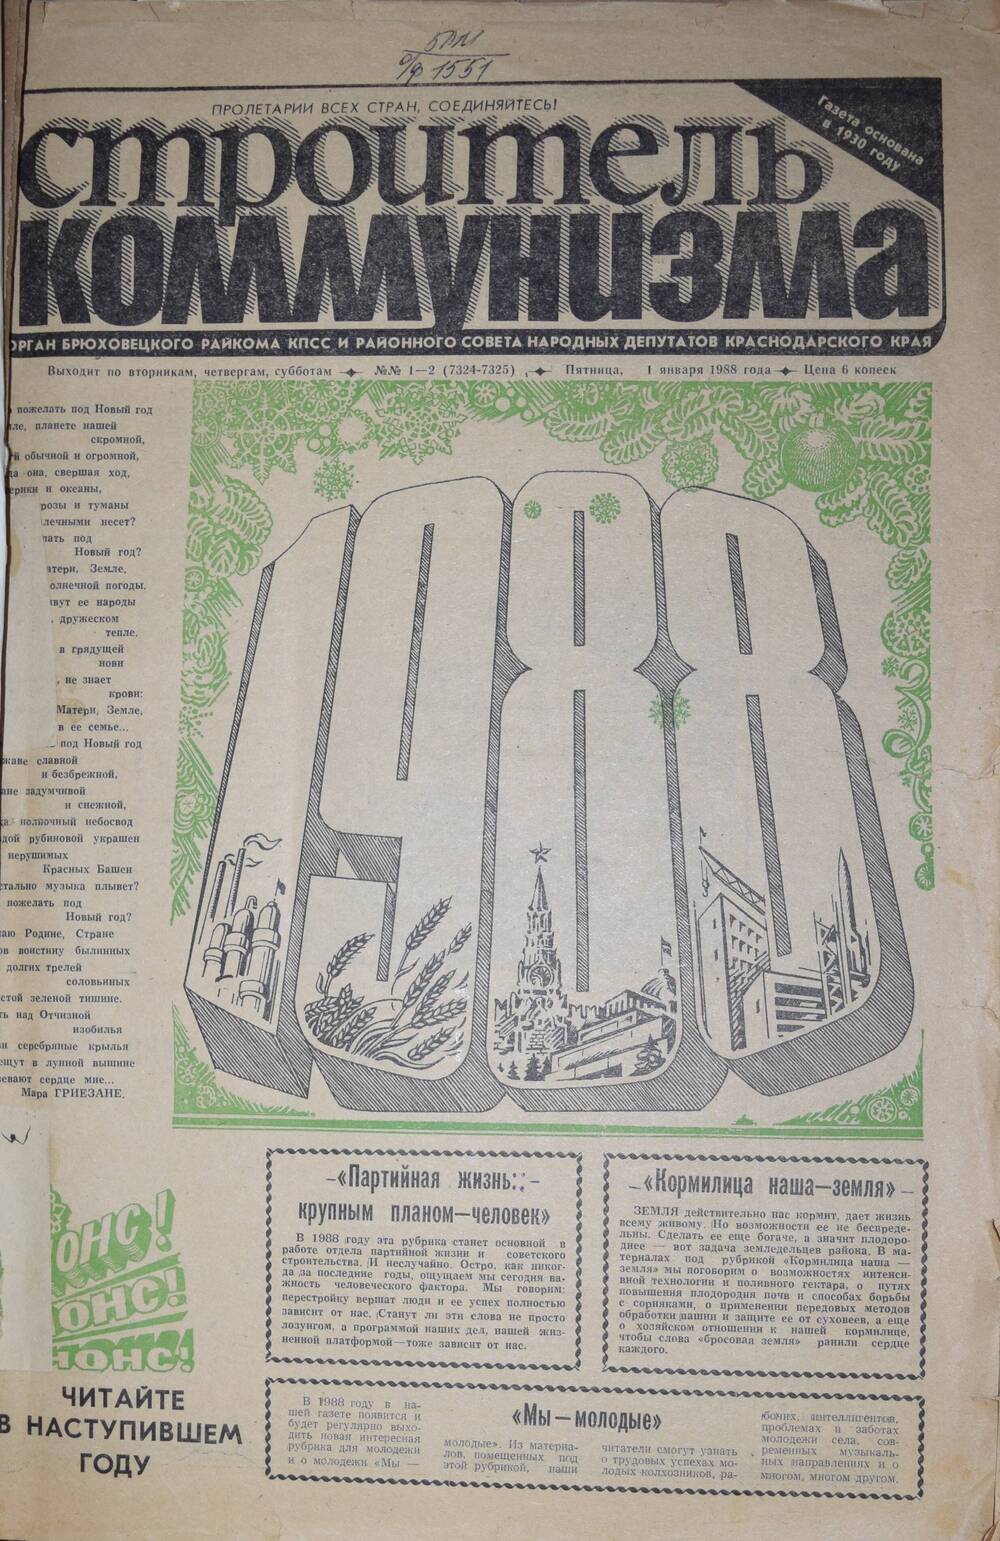 Подшивка газеты «Строитель коммунизма» за 1988 год без переплета.